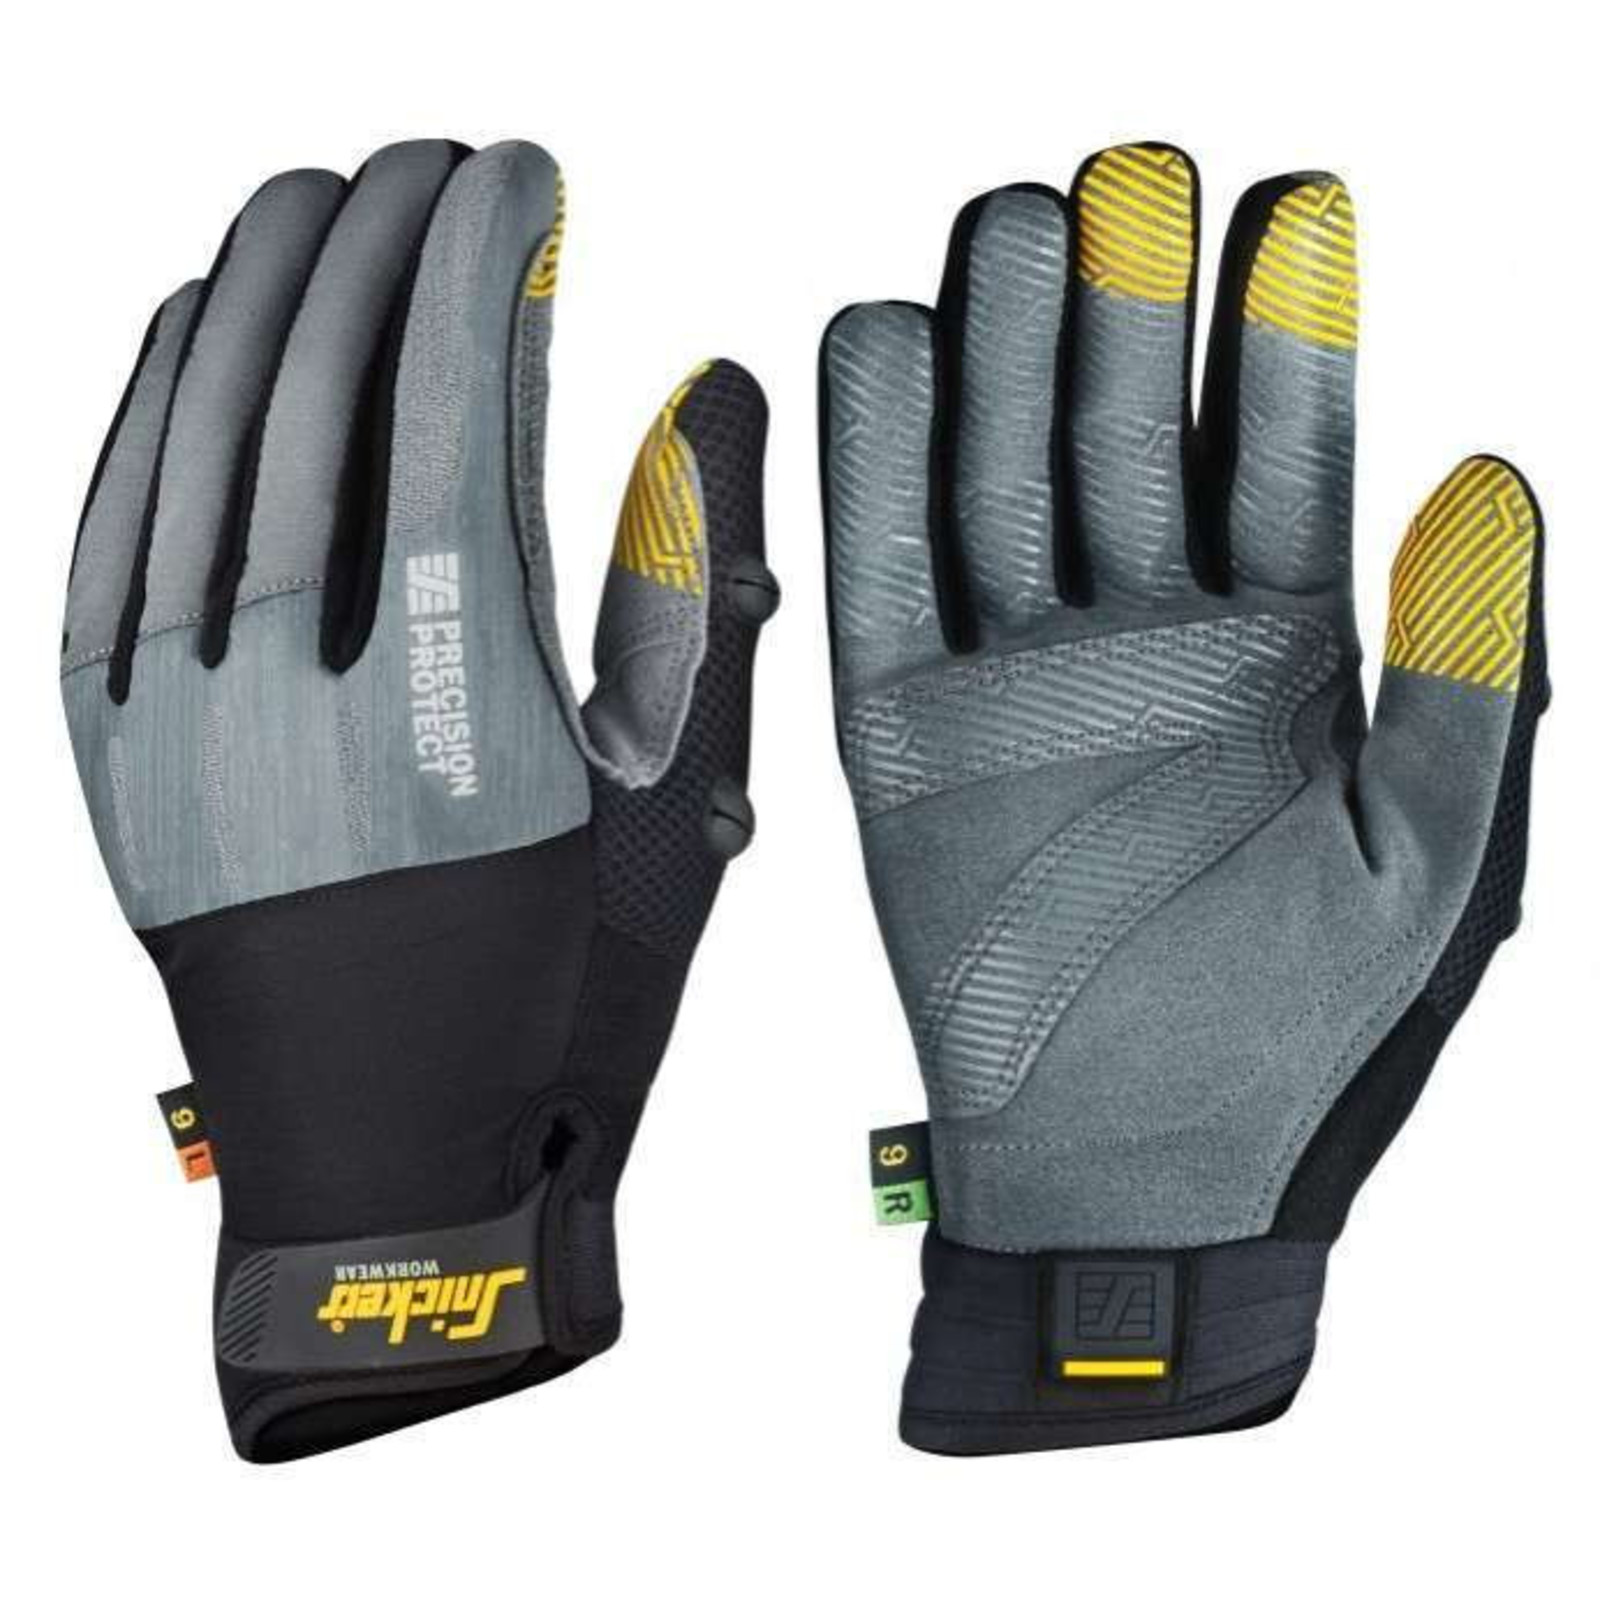 Pracovné rukavice Snickers® Precision Protect kombinované - veľkosť: 7/S, farba: sivá/čierna